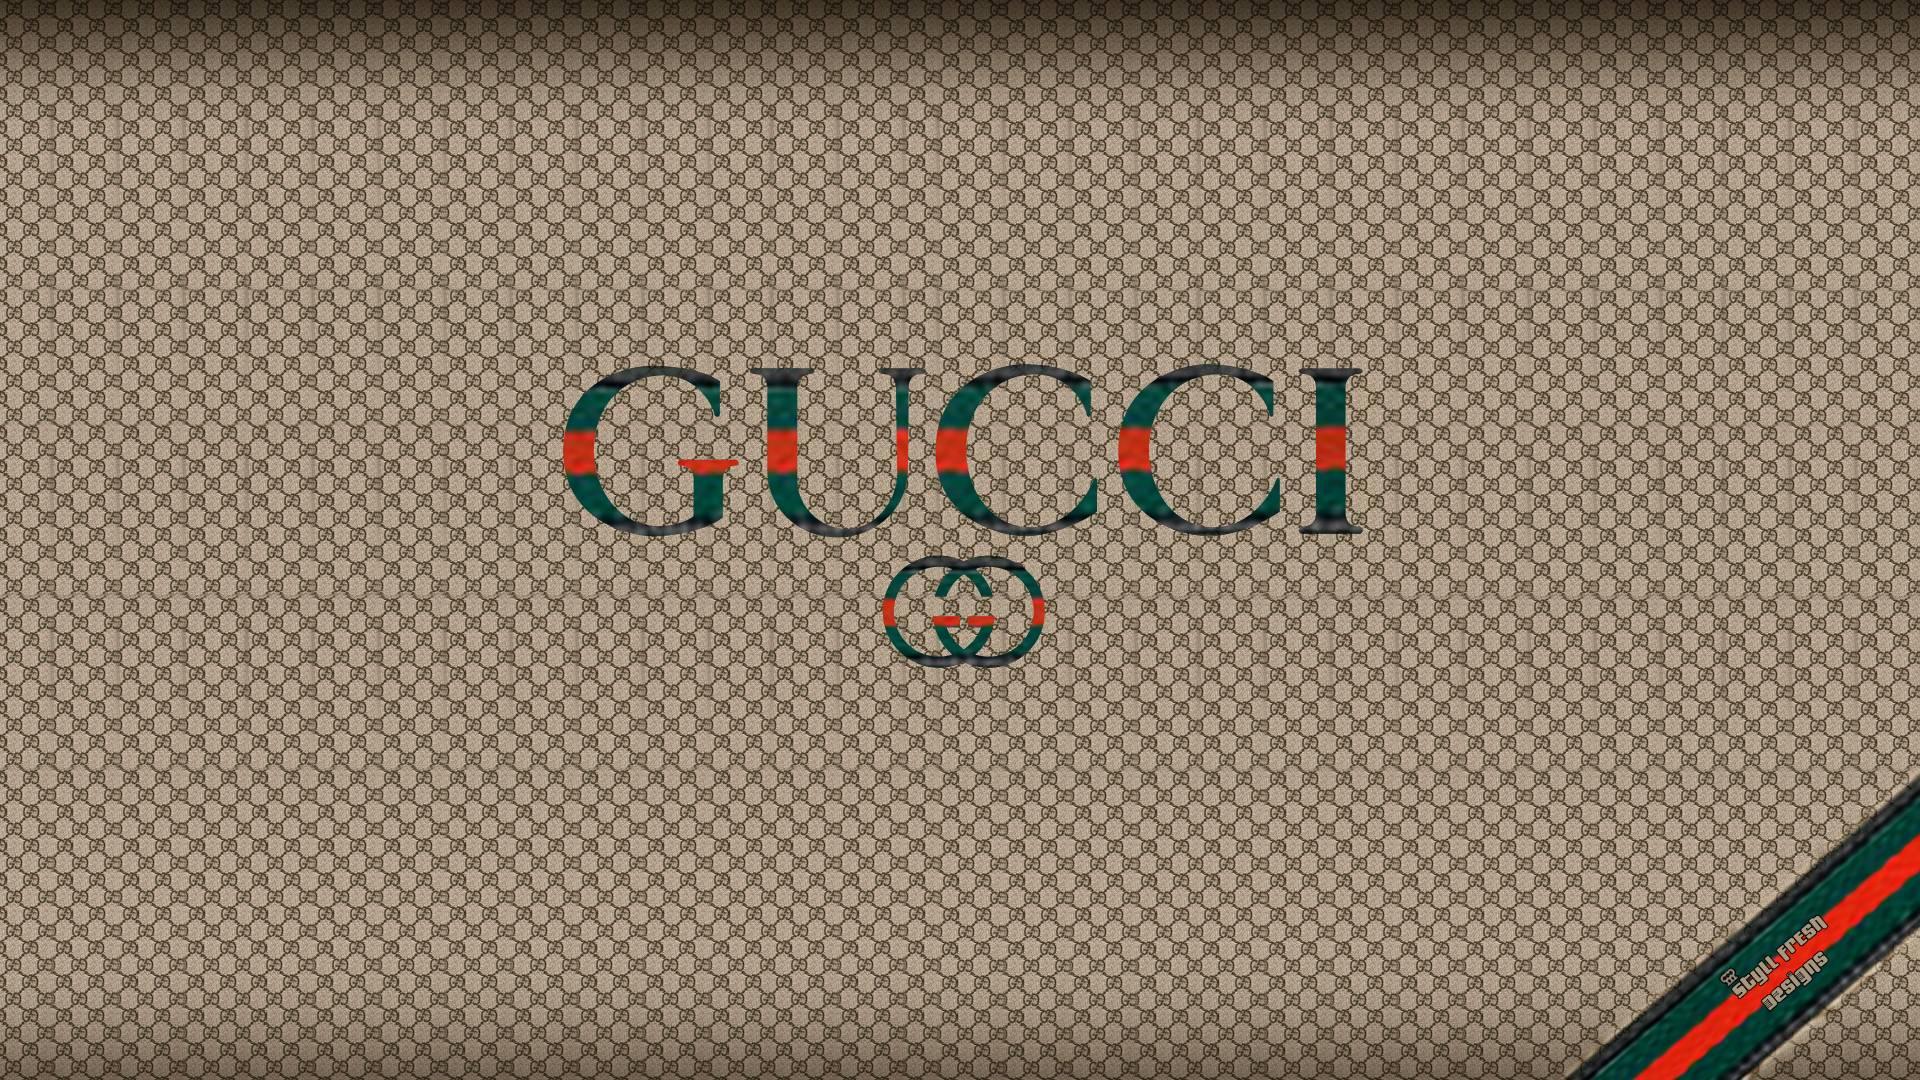 1920 x 1080 · jpeg - Gucci Logo Wallpapers - Wallpaper Cave